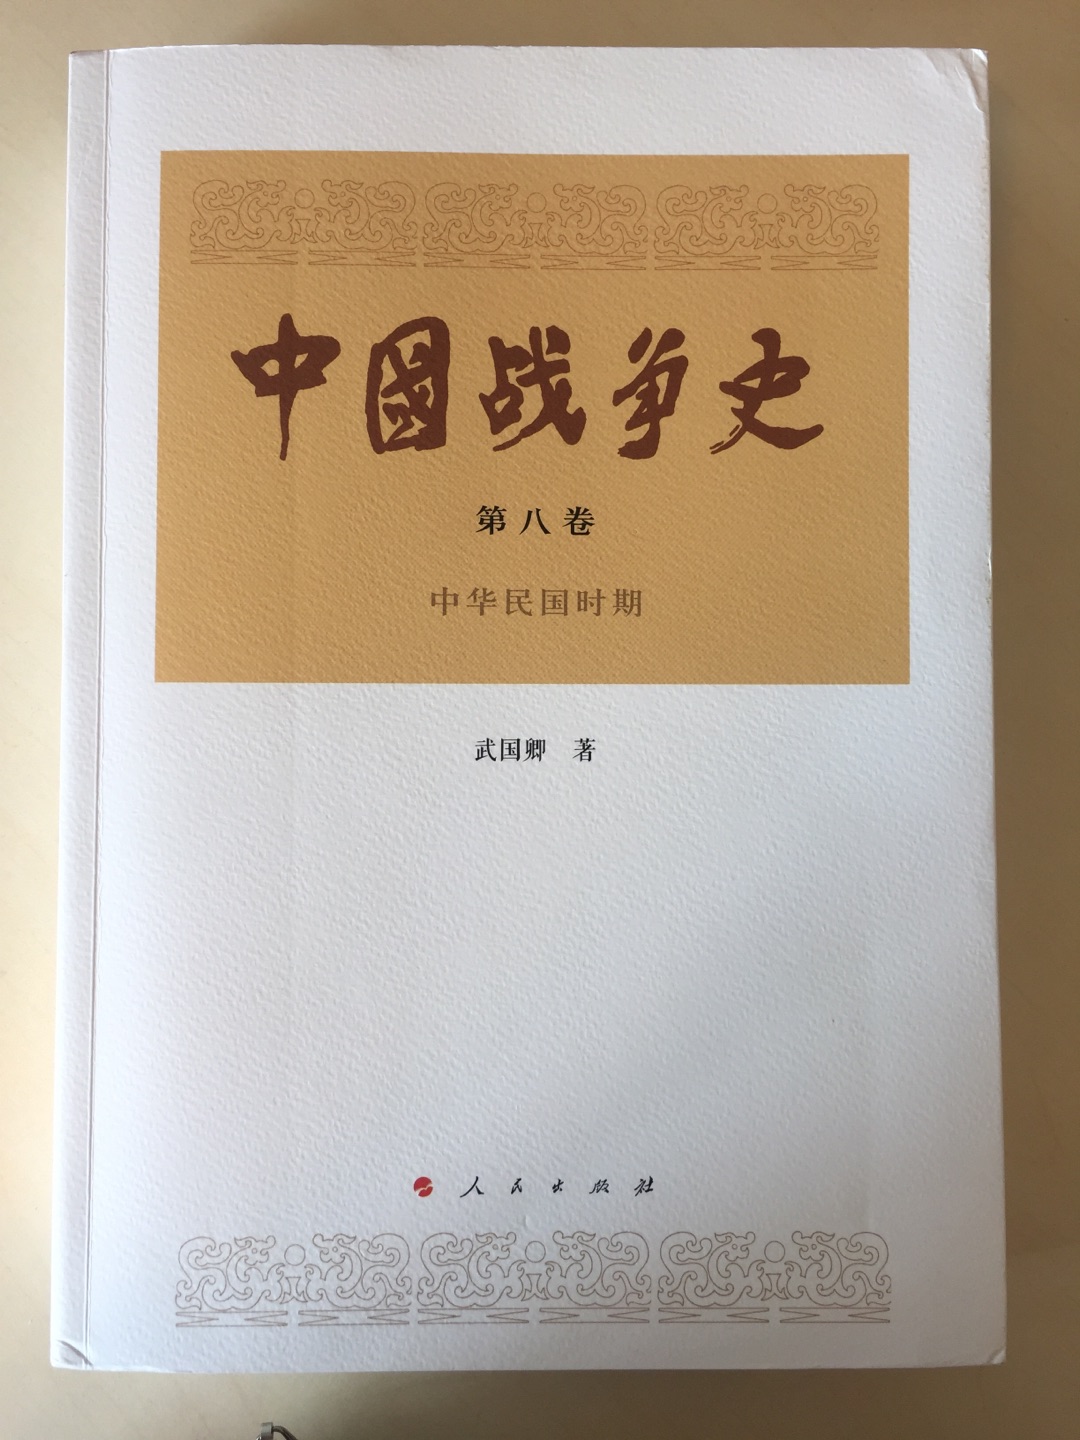 终于把一套《中国战争史》买全了！拿在手上，很有厚重感！非常棒的一套书，值得认真研究！